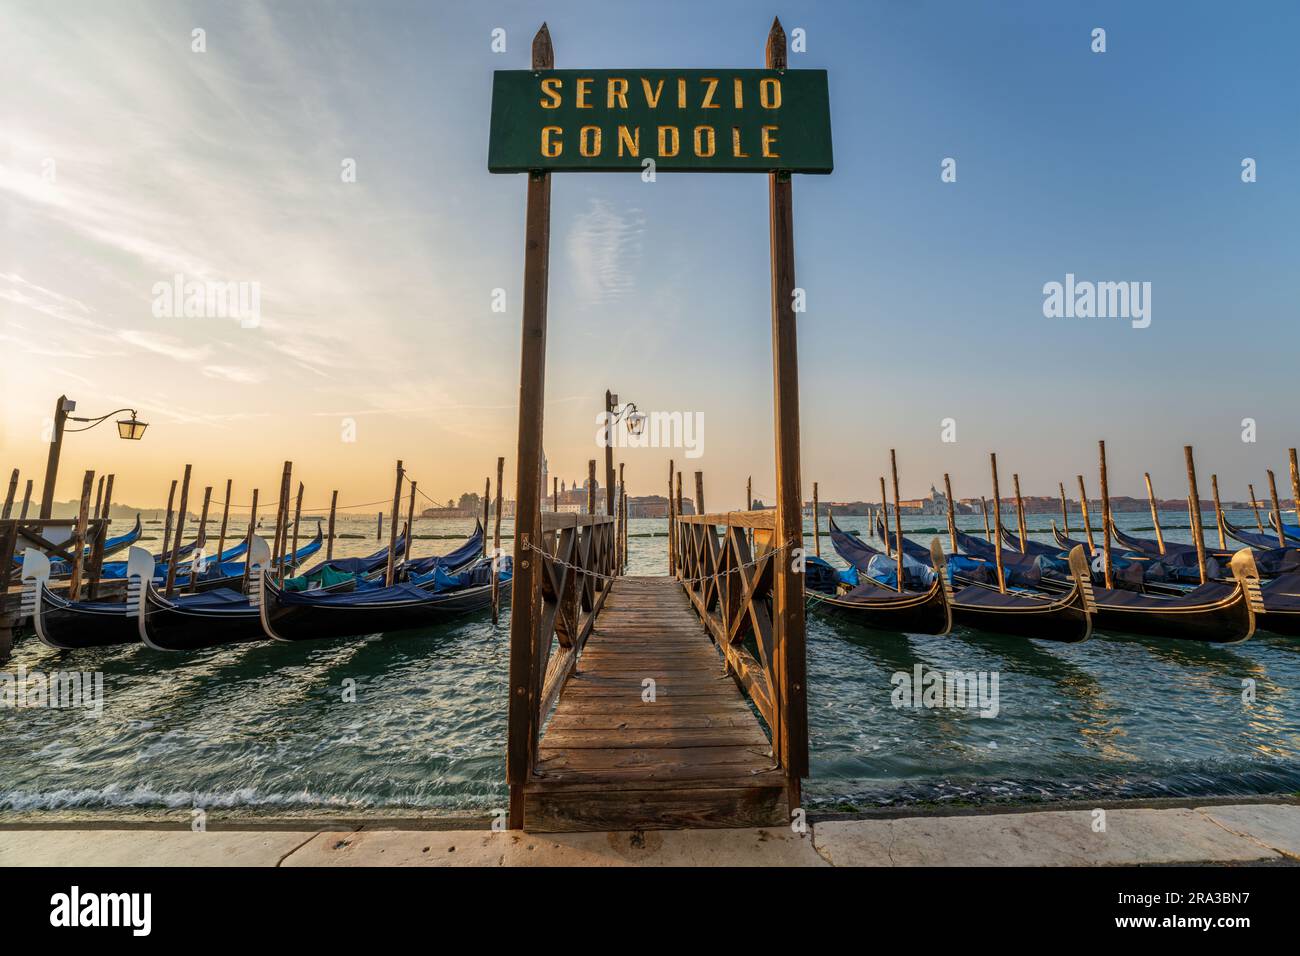 Gondeln, die am Pier mit dem Schild „Gondola Service“ bei Sonnenaufgang auf dem Kanal nahe dem Markusdom in Venedig, Italien, verankert sind. Diese italienische Skyline von Venedig ist unglaublich. Stockfoto